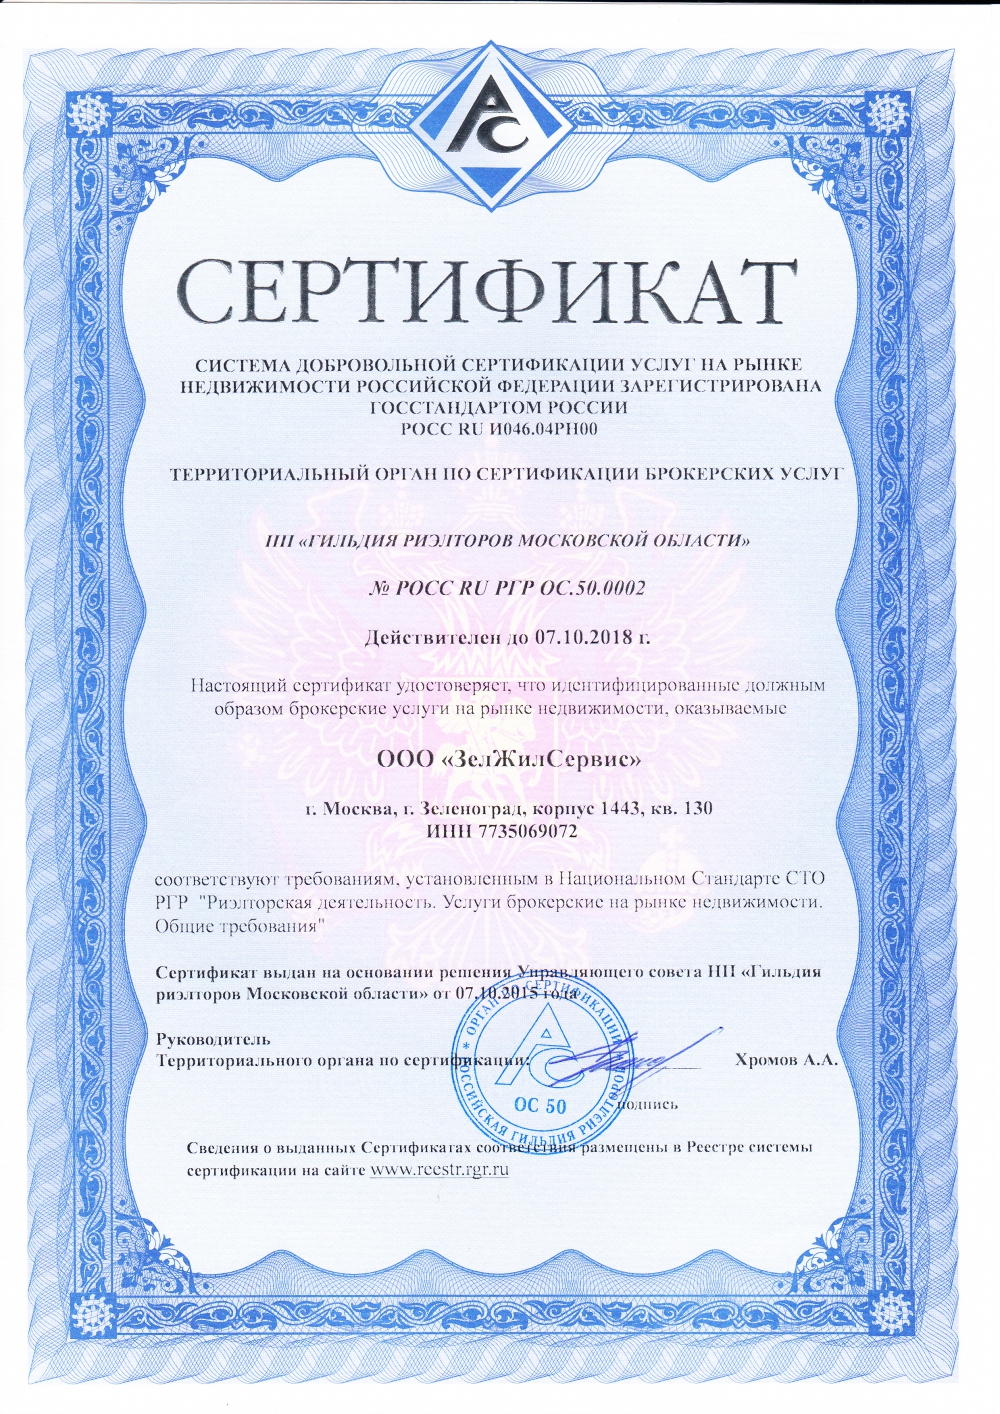 Сертификат на осуществление риэлторских услуг на рынке недвижимости Российской Федерации